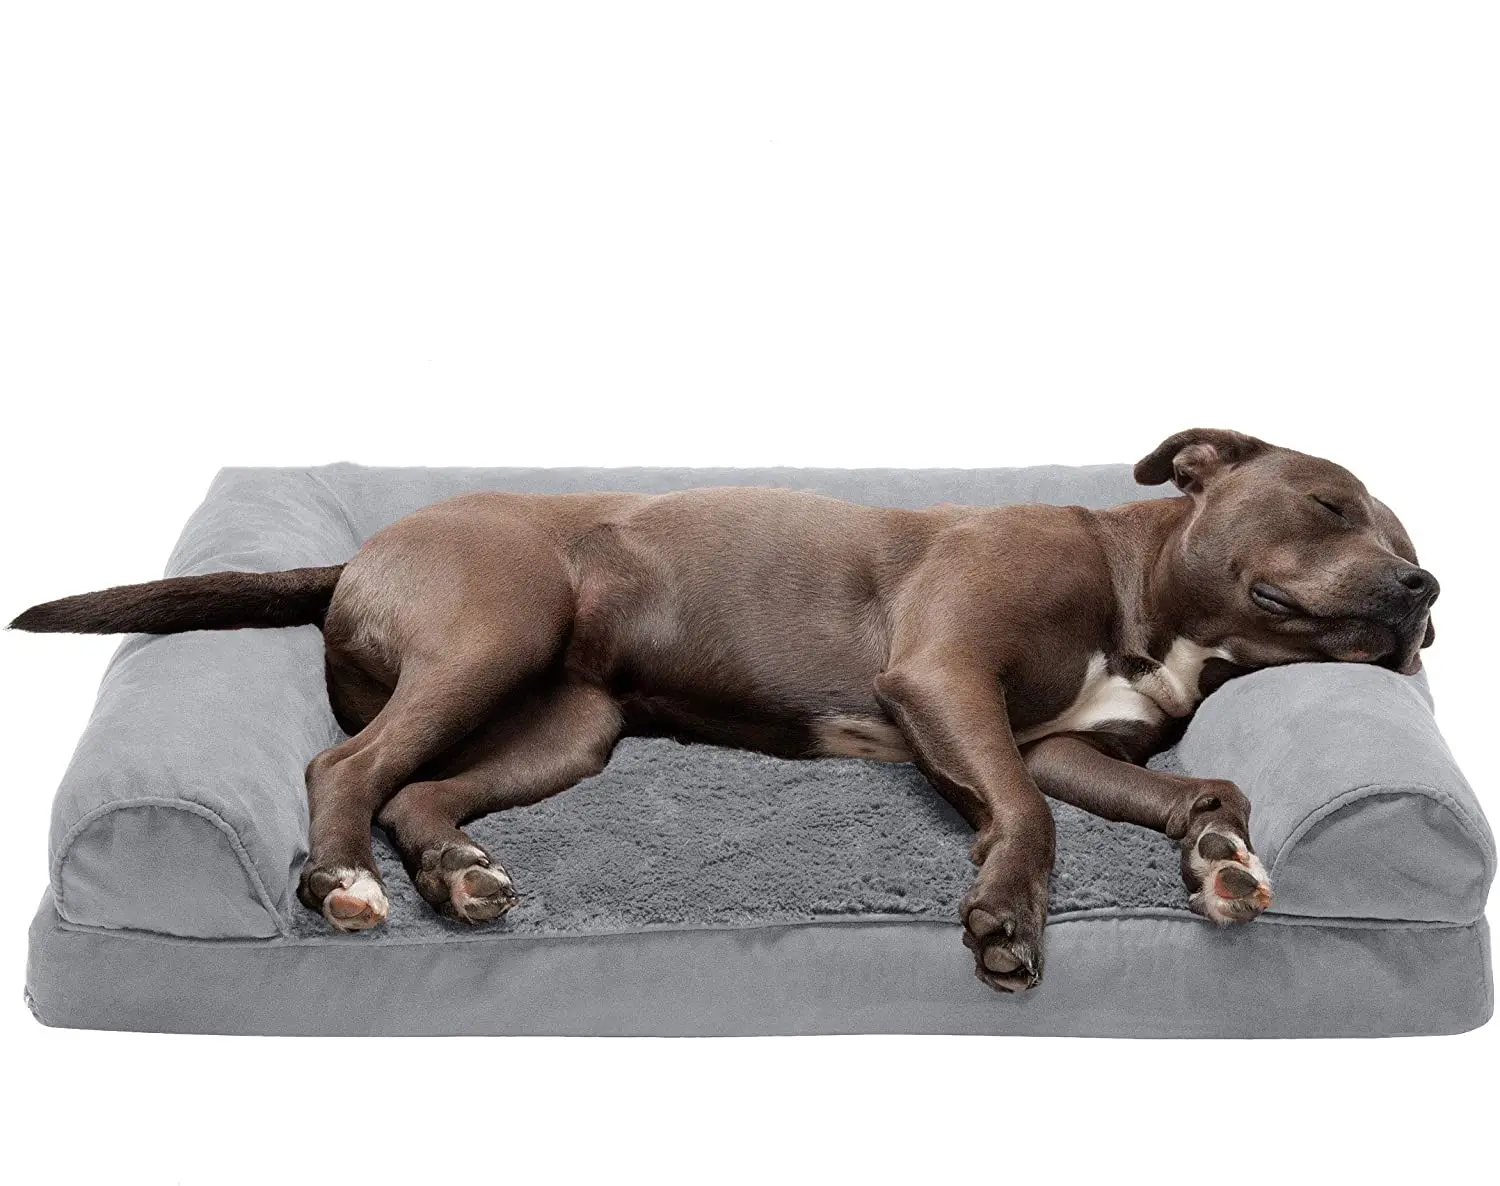 उच्च सिलेंडर कुत्तों और <span class=keywords><strong>बिल्लियों</strong></span> के लिए आर्थोपेडिक पालतू बिस्तर सोफे शैली आलीशान फर और साबर सोफे कुत्ते बिस्तर के साथ हटाने योग्य धो सकते हैं कवर